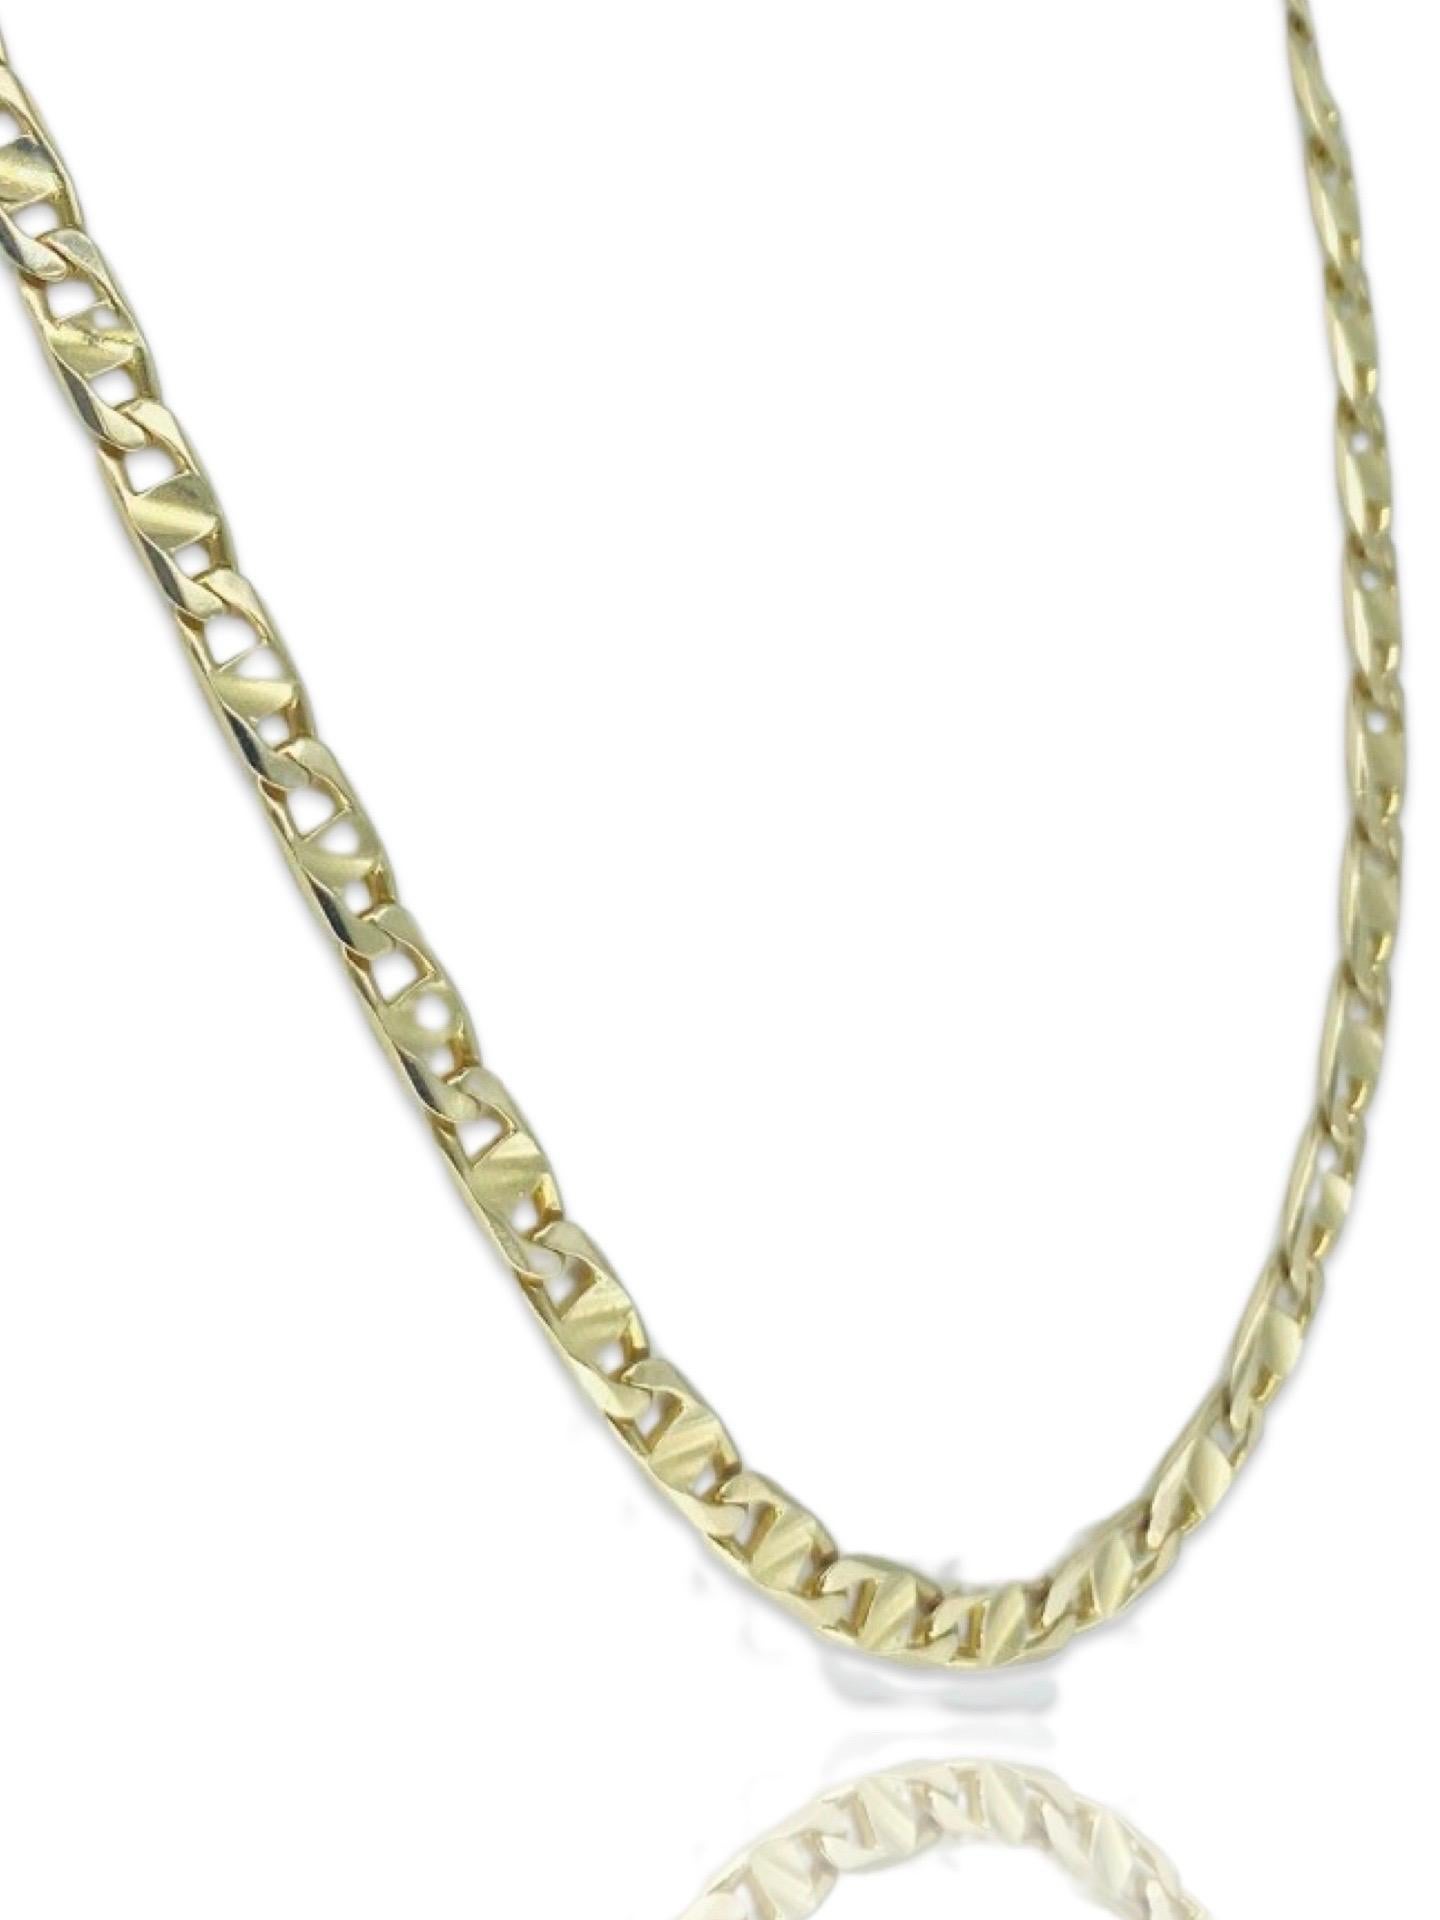 Designer Herren 5mm Fancy Mariner Link Kette Halskette 14k Gold. Die Kette wiegt 25,3 g und hat eine Länge von 18,5 cm. Gekennzeichnet mit Tissor (Designer) Hergestellt in Italien.
